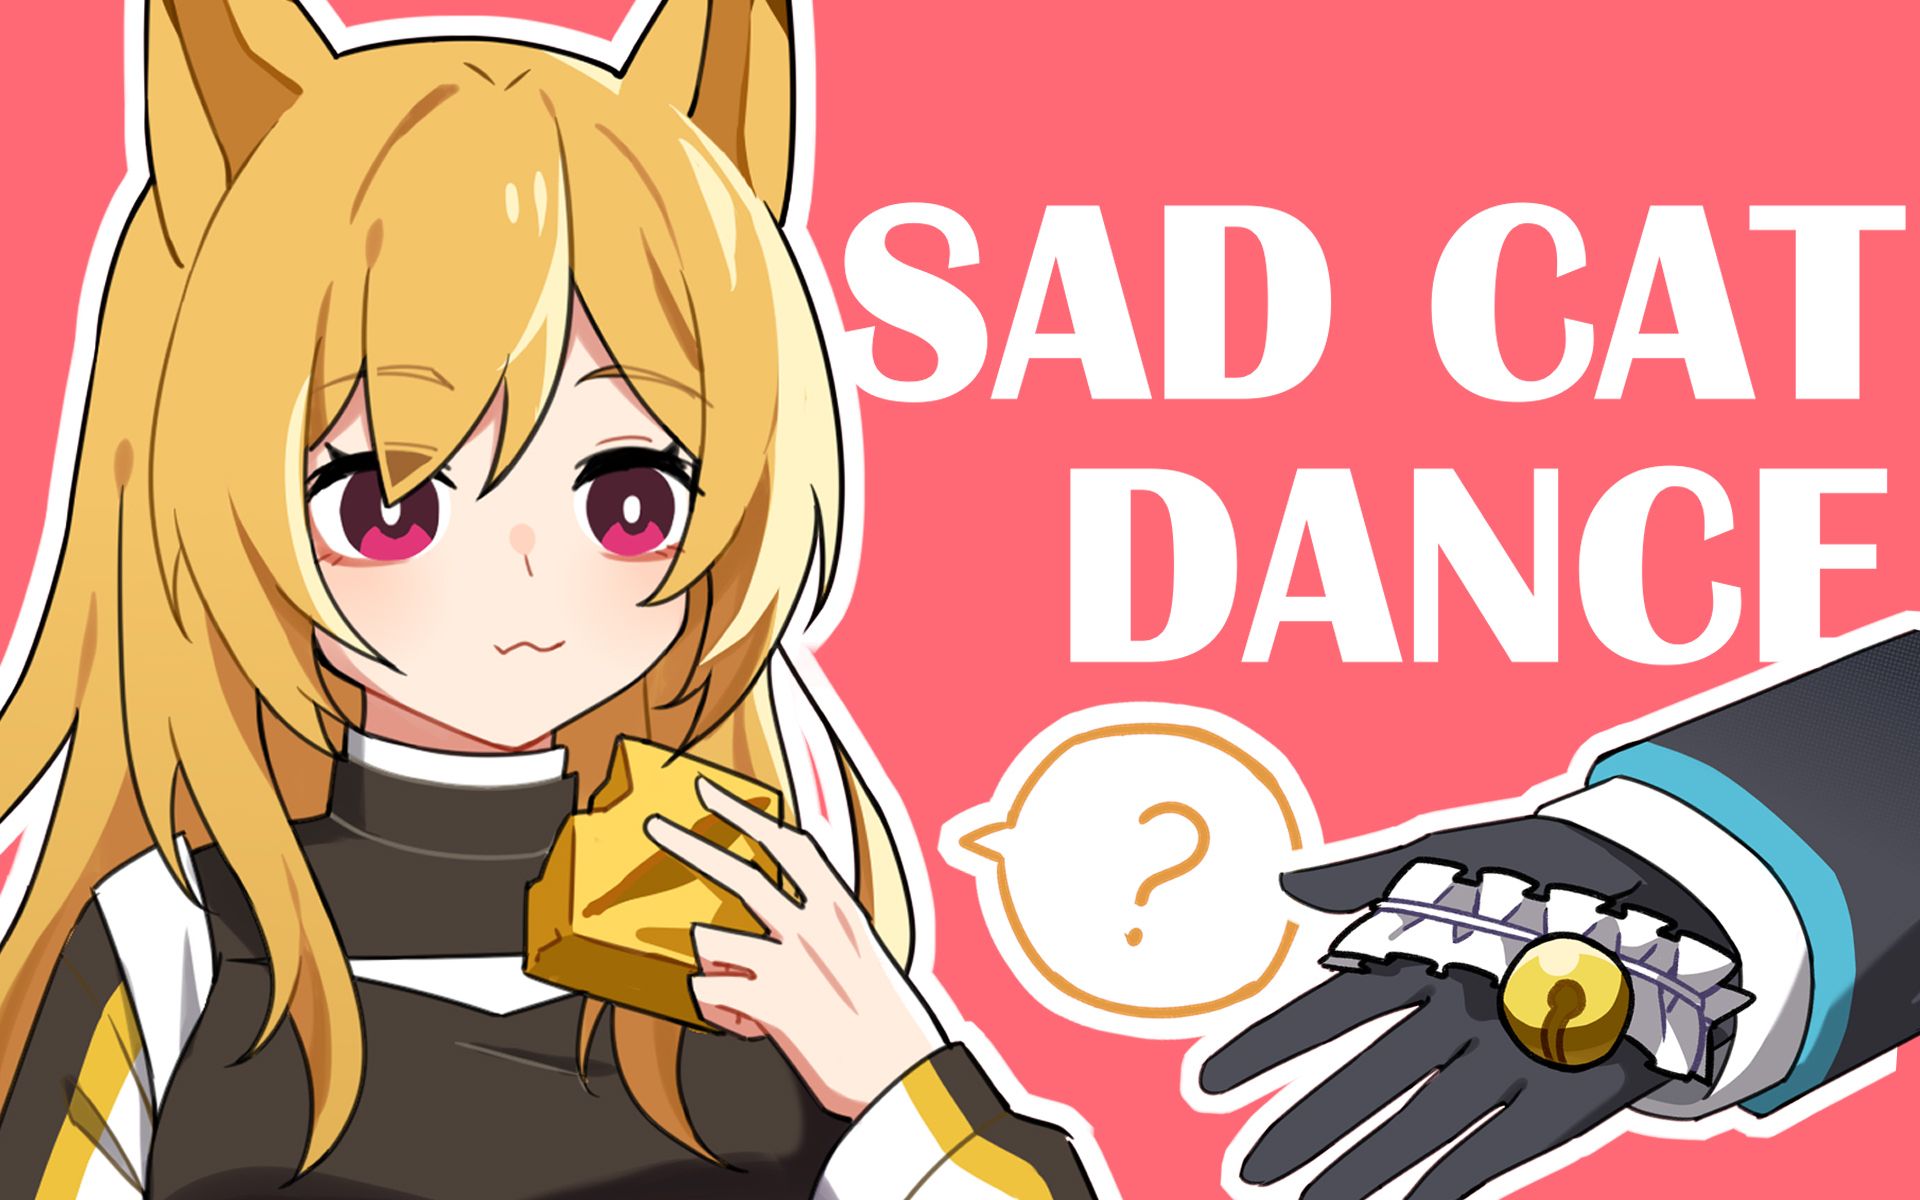 Sad Cat Dance